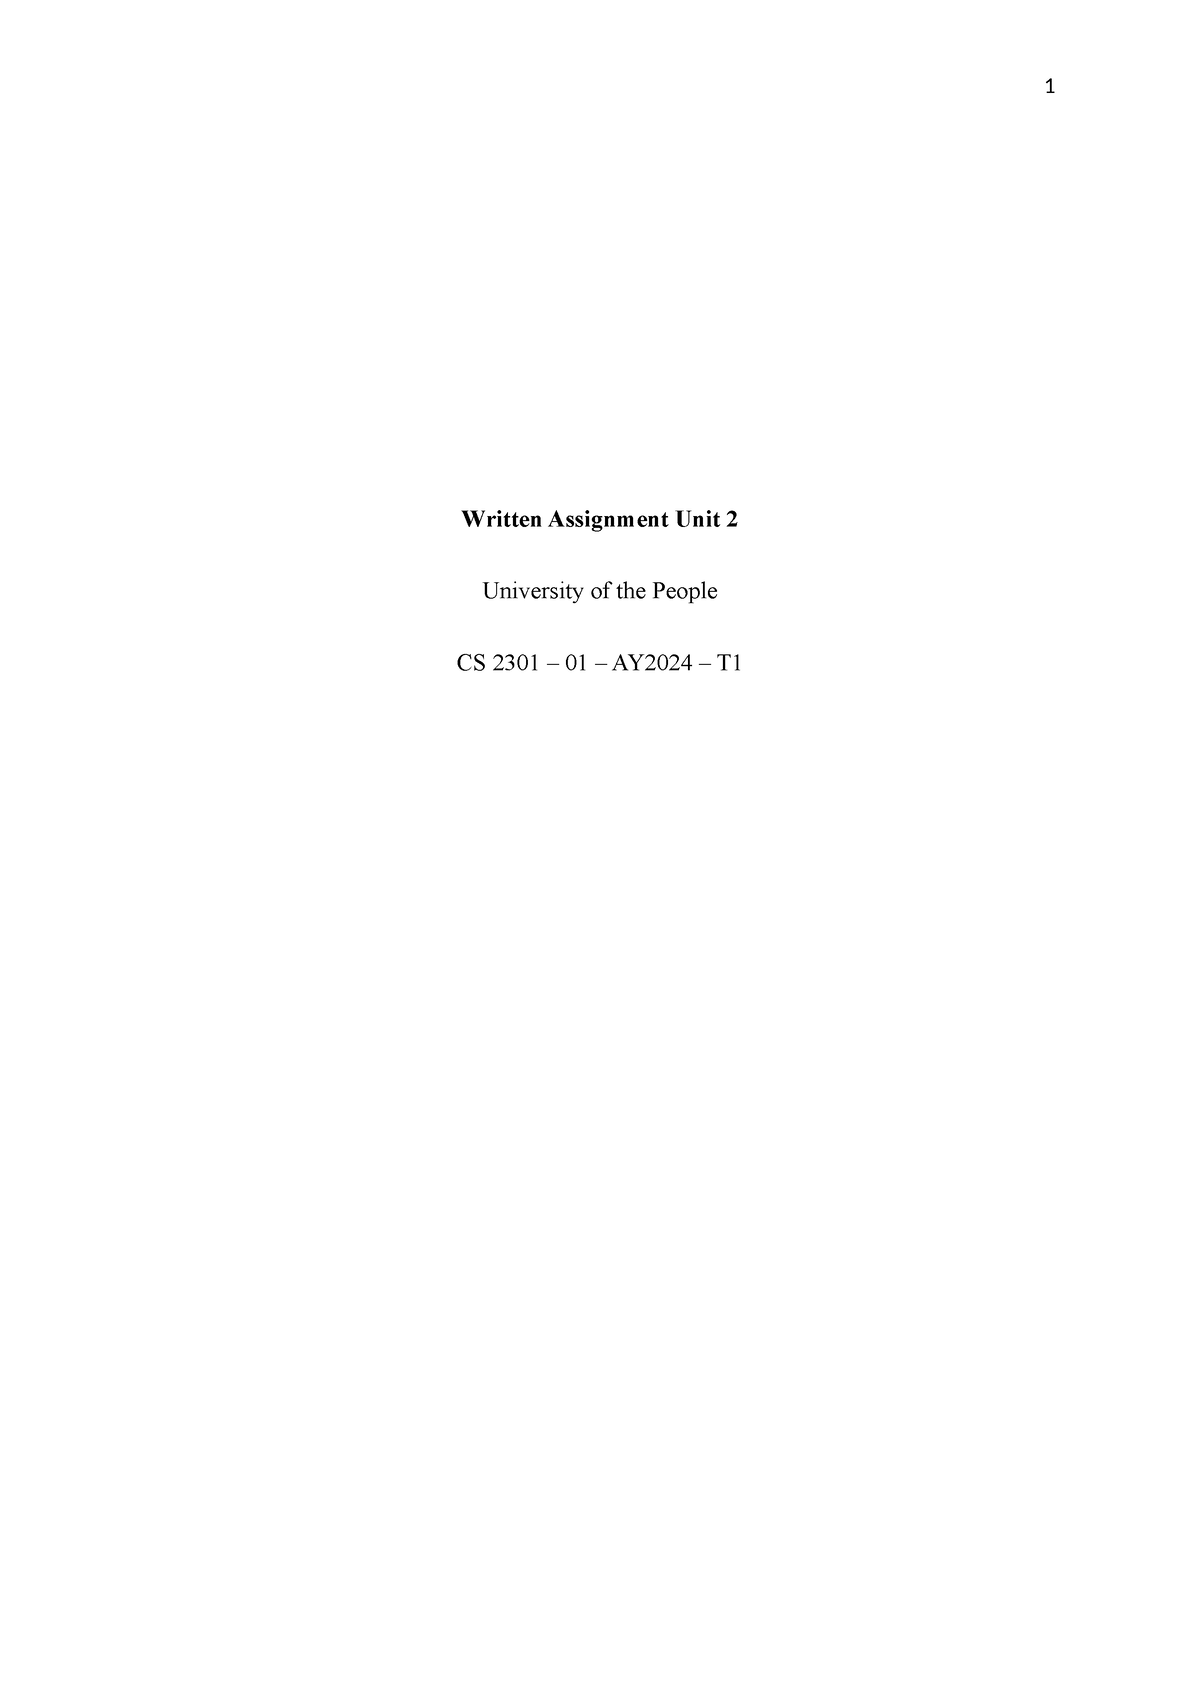 cs 2301 written assignment unit 2